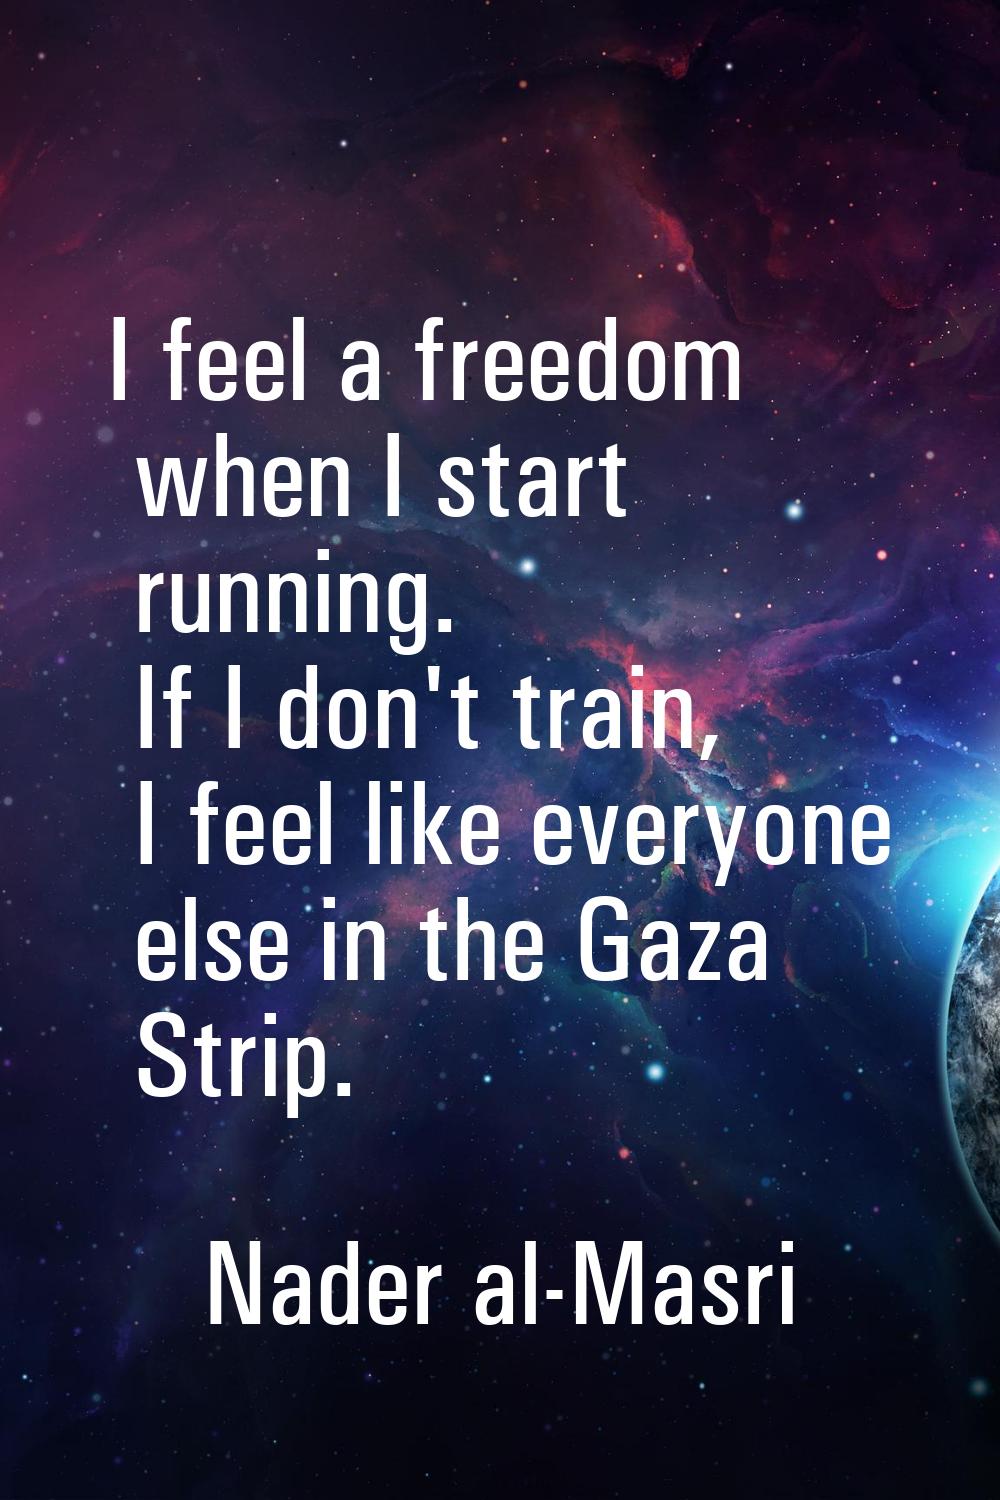 I feel a freedom when I start running. If I don't train, I feel like everyone else in the Gaza Stri